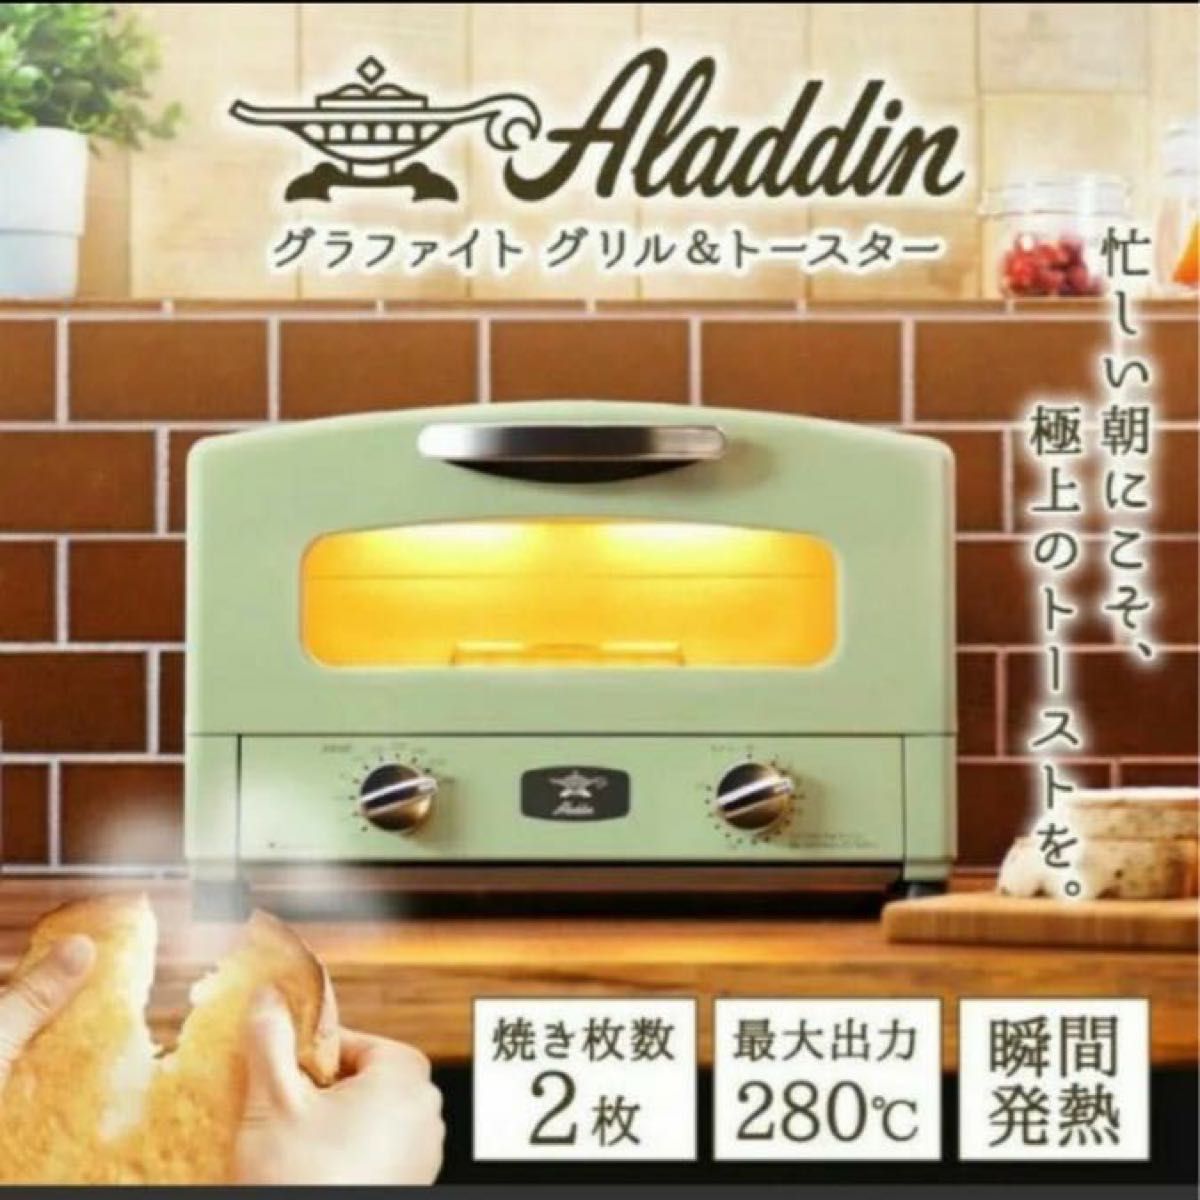 Aladdin アラジングリル&トースター 2枚焼き AET-GS13C Yahoo!フリマ